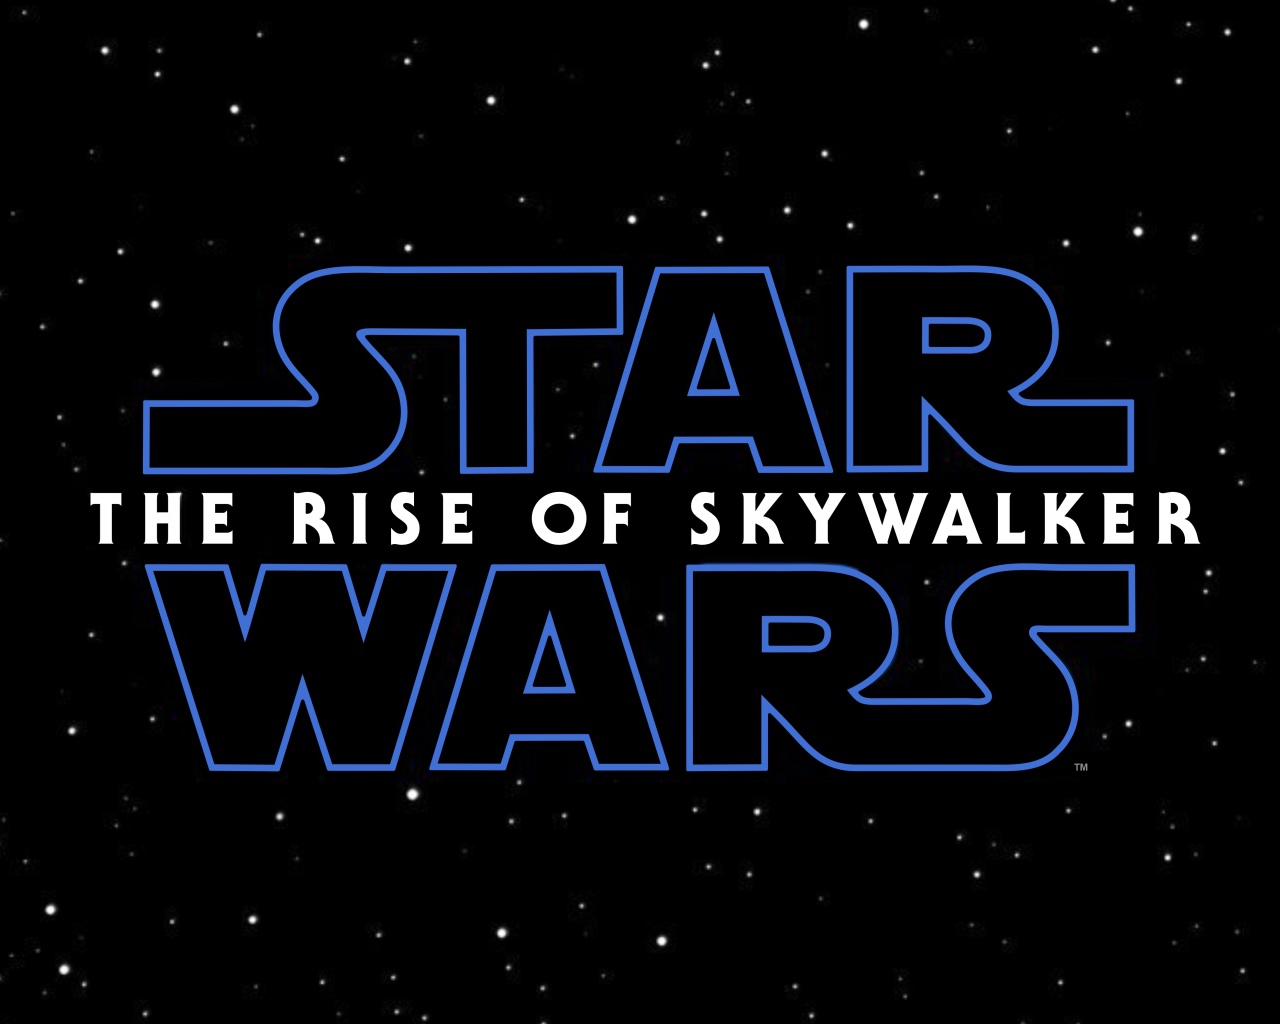 Логотип фильма Звёздные войны: Эпизод IX на черном фоне